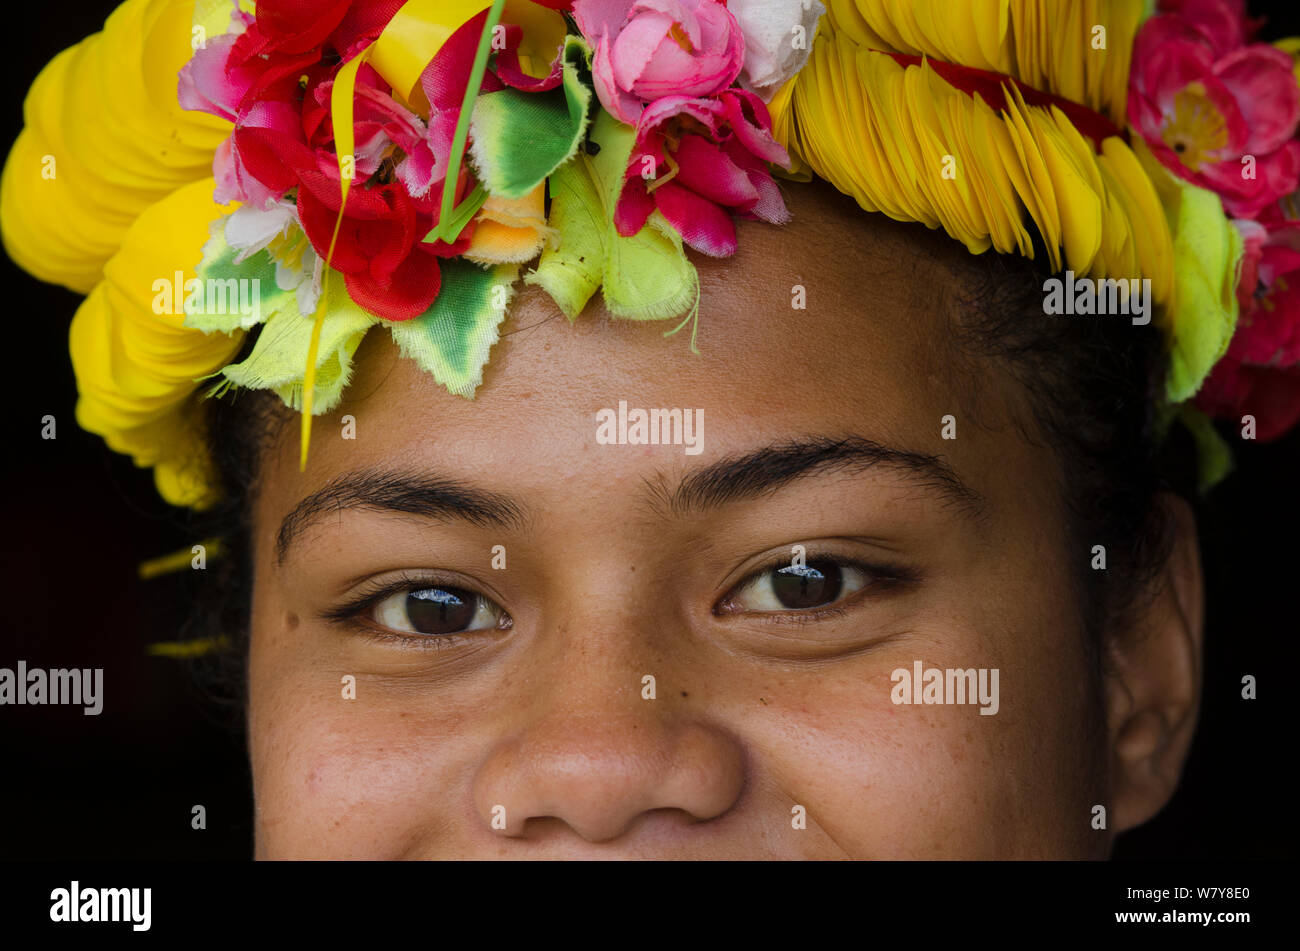 Donna che indossa tradizionale copricapo floreale per cerimonia, Kioa Isola, Figi, South Pacific, luglio 2014. Foto Stock